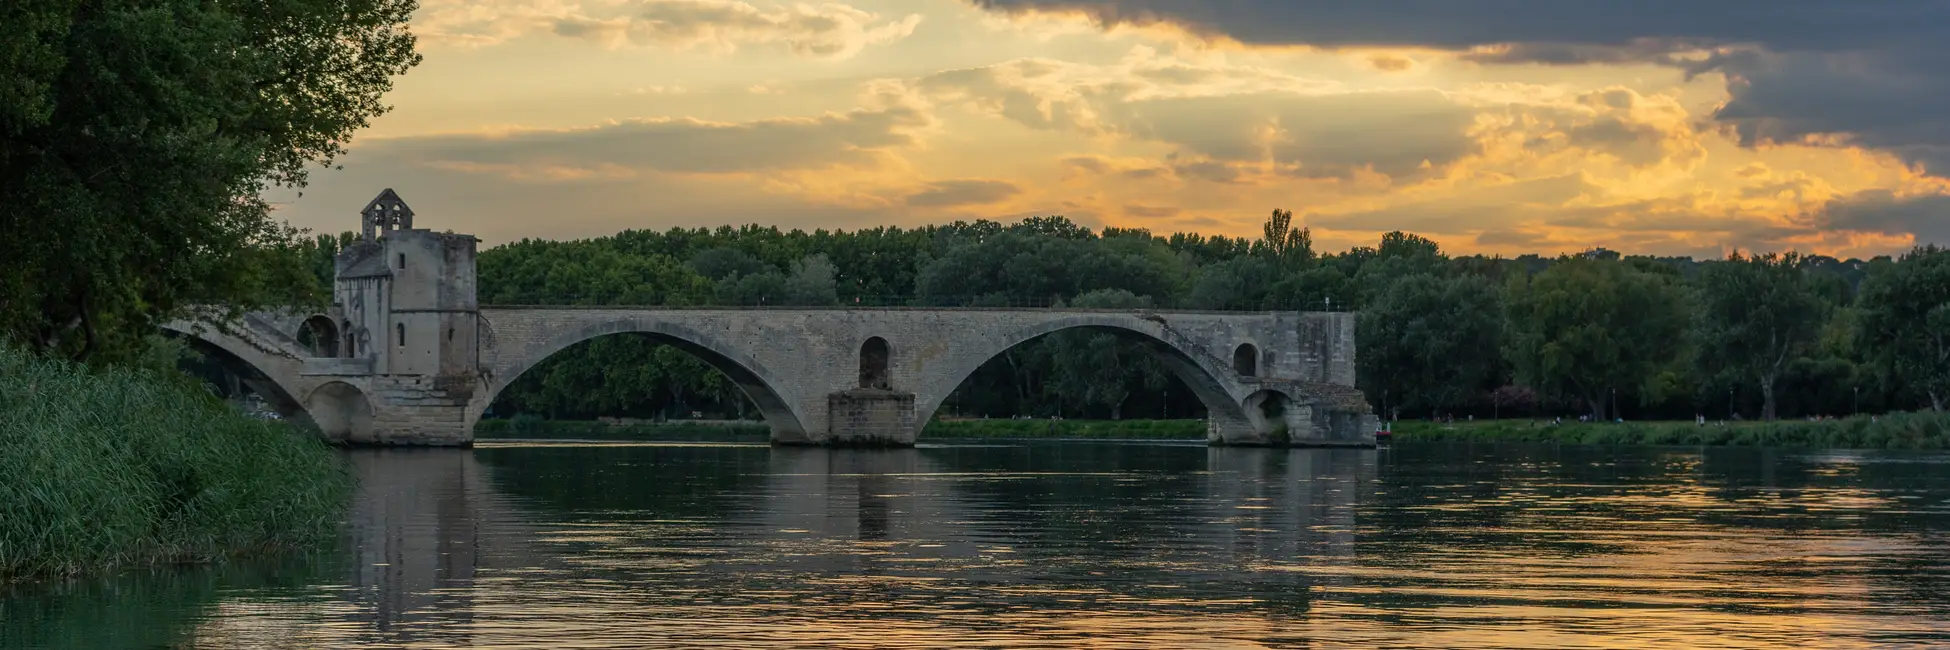 Le pont d'Avignon au coucher du soleil 